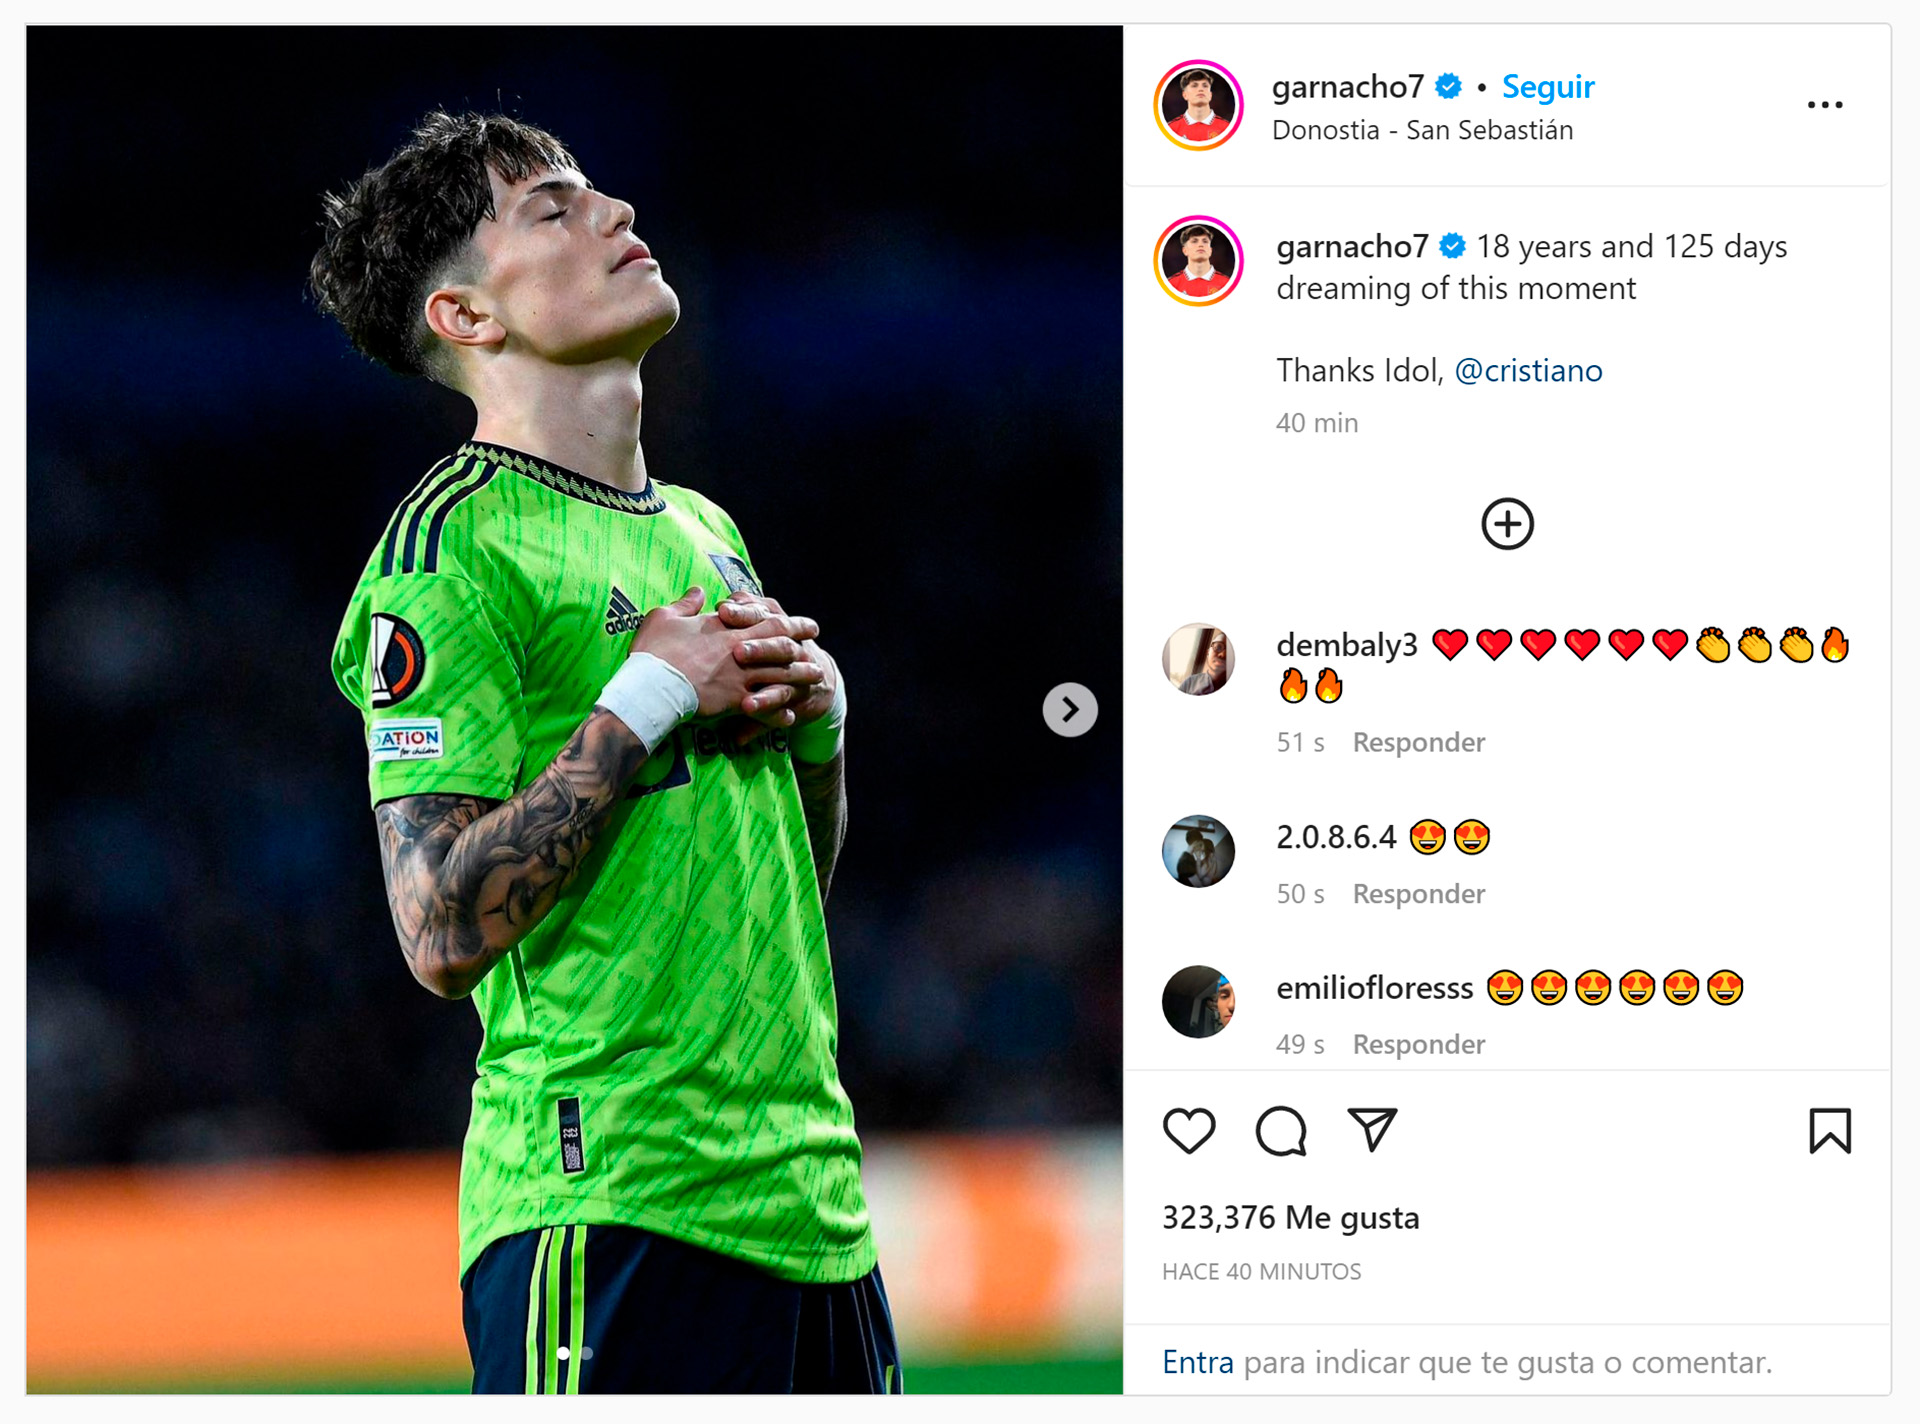 Il post di Garnacho dopo la sua prima apparizione da gol con il Manchester United